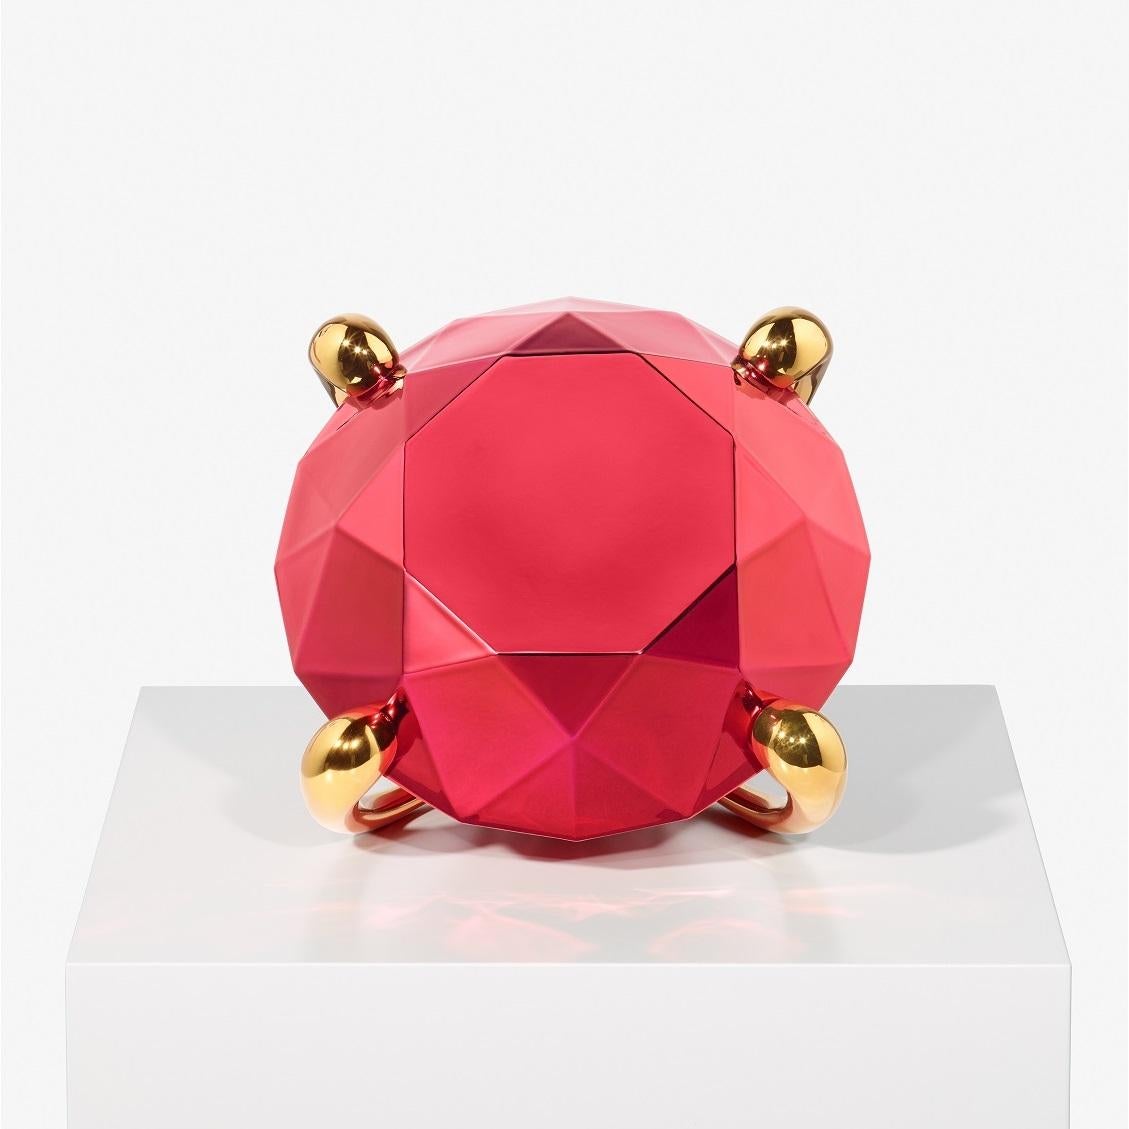 Red Diamond Sculpture von Jeff Koons, Porzellan, Luxus-Objekte, Zeitgenössische Kunst